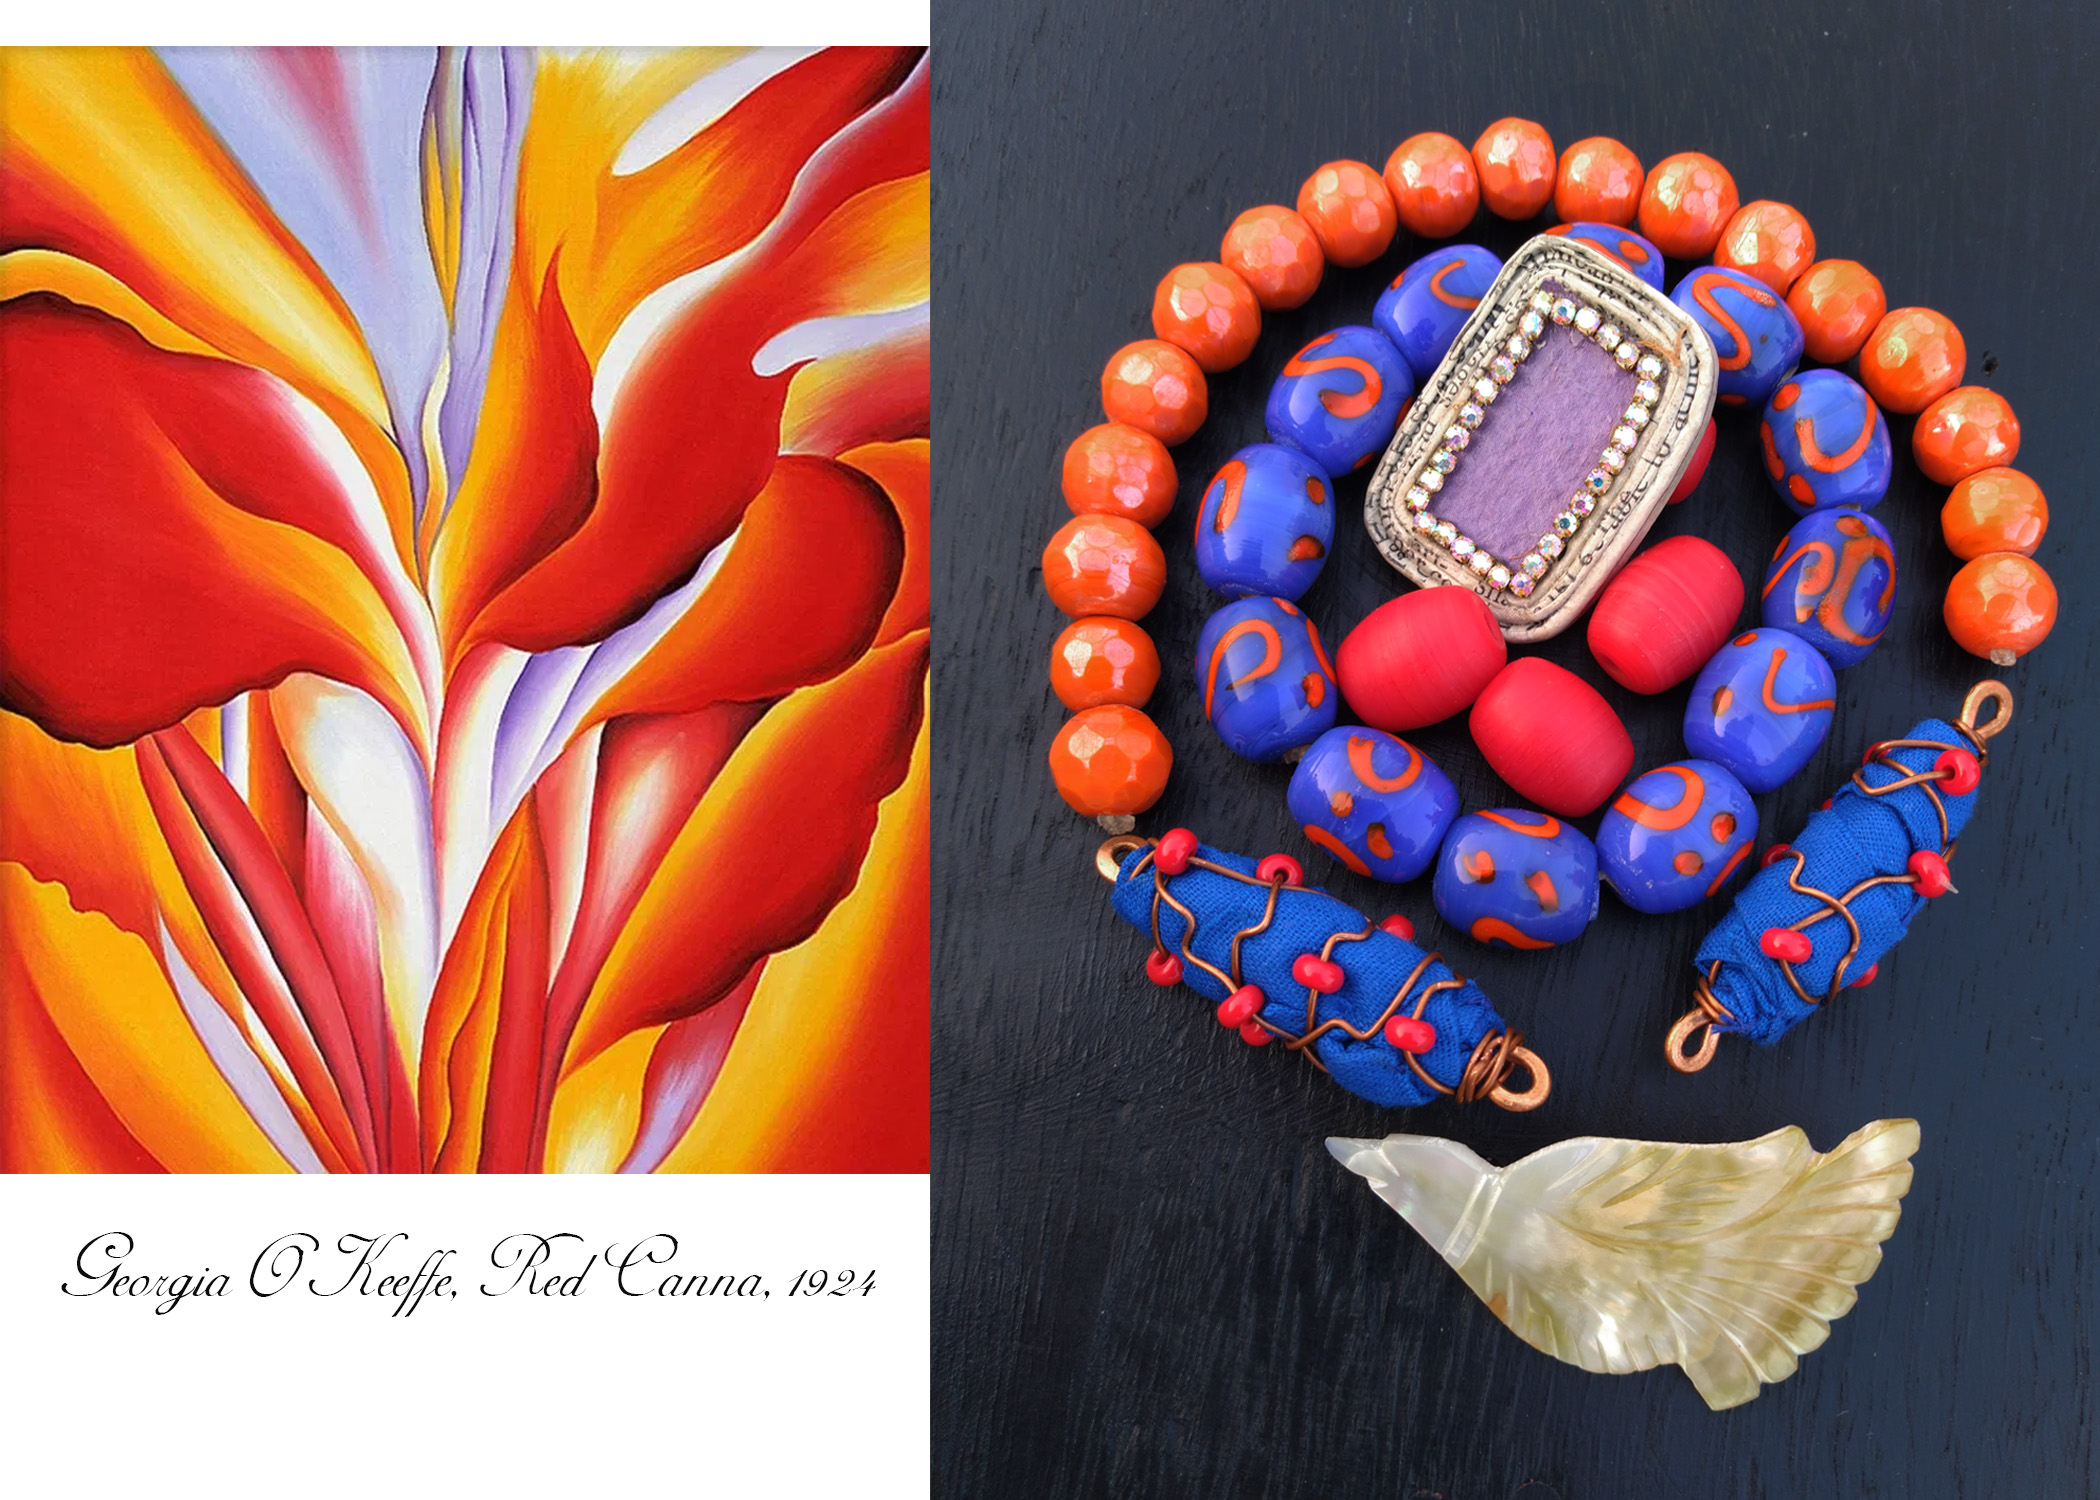 Georgia O’Keeffe, Red Canna beads